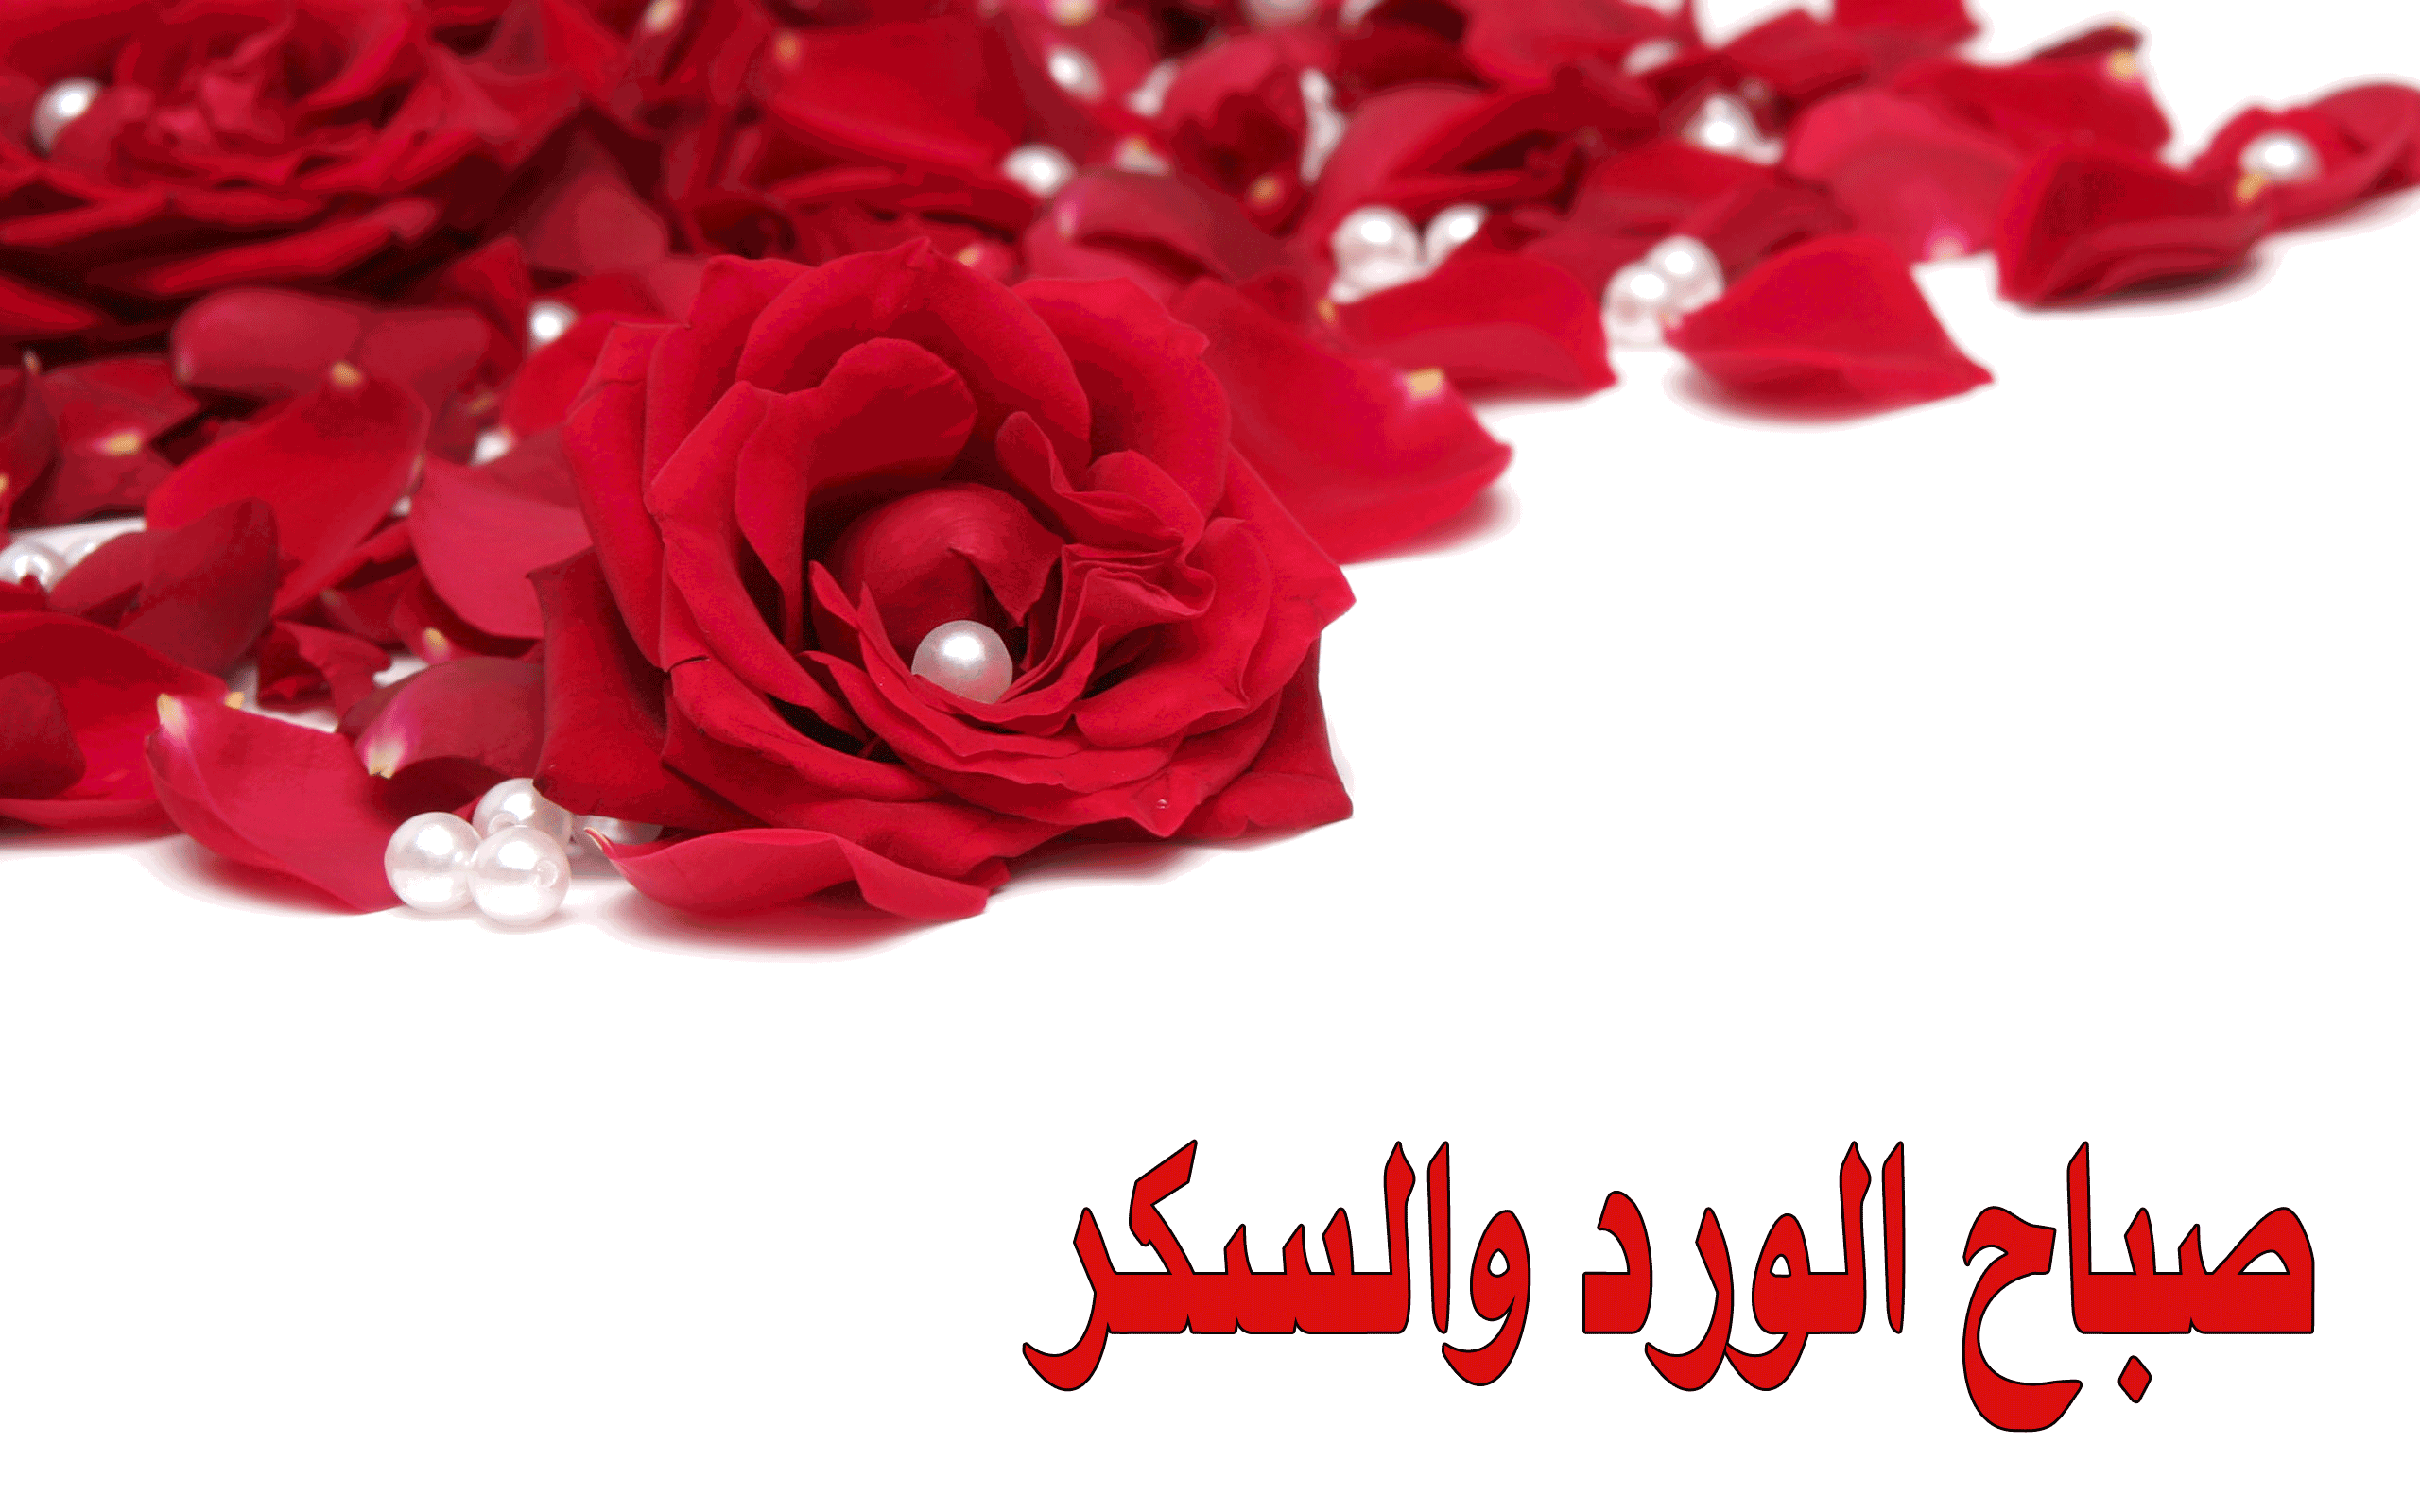 5251 صورصباح الخير متحركة , اجمل صور صباح الخير غزالة الشوق